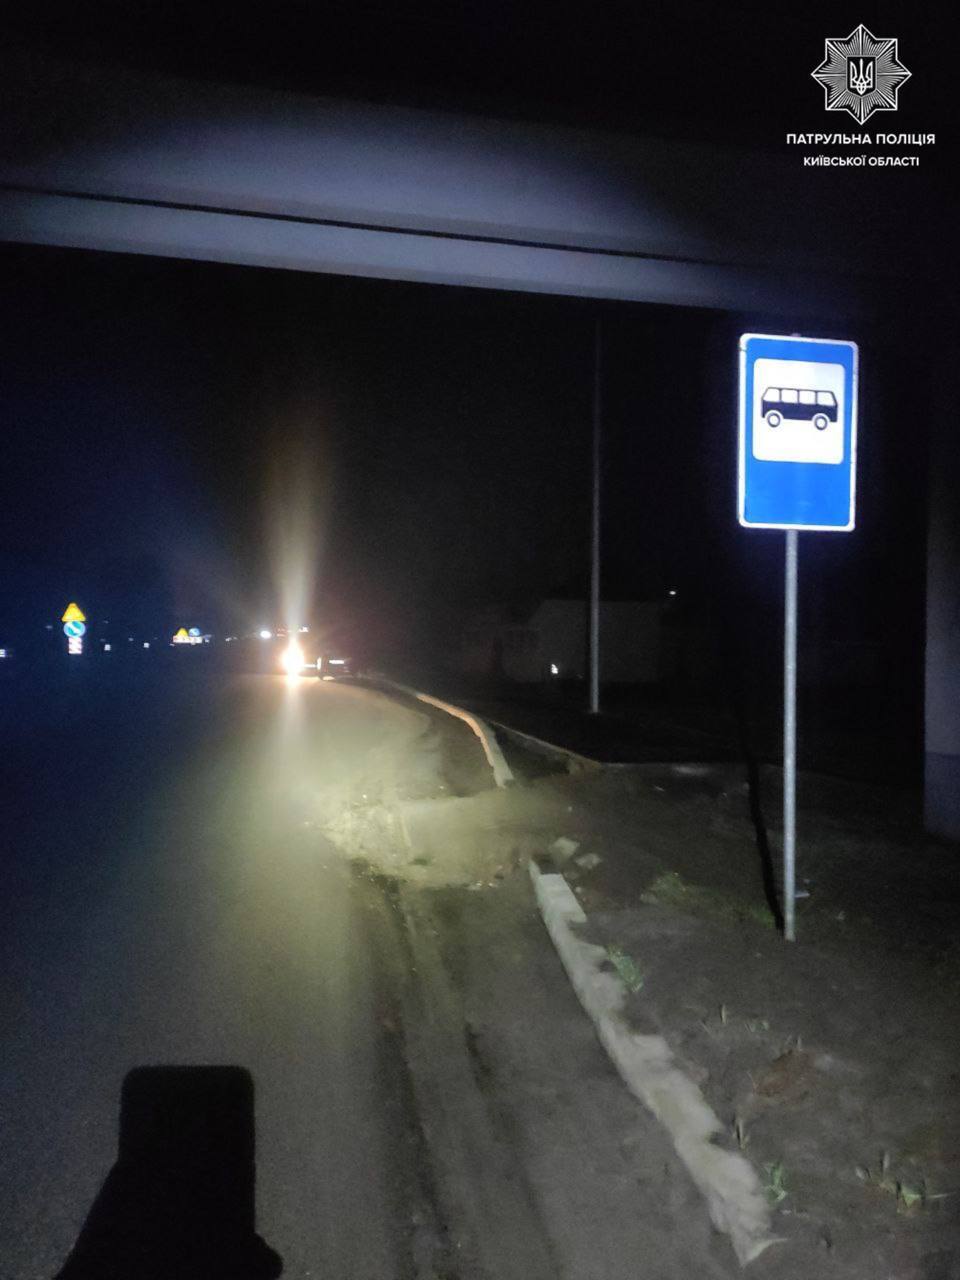 В Киевской области пьяный водитель легковушки едва не въехал в остановку. Фото и подробности